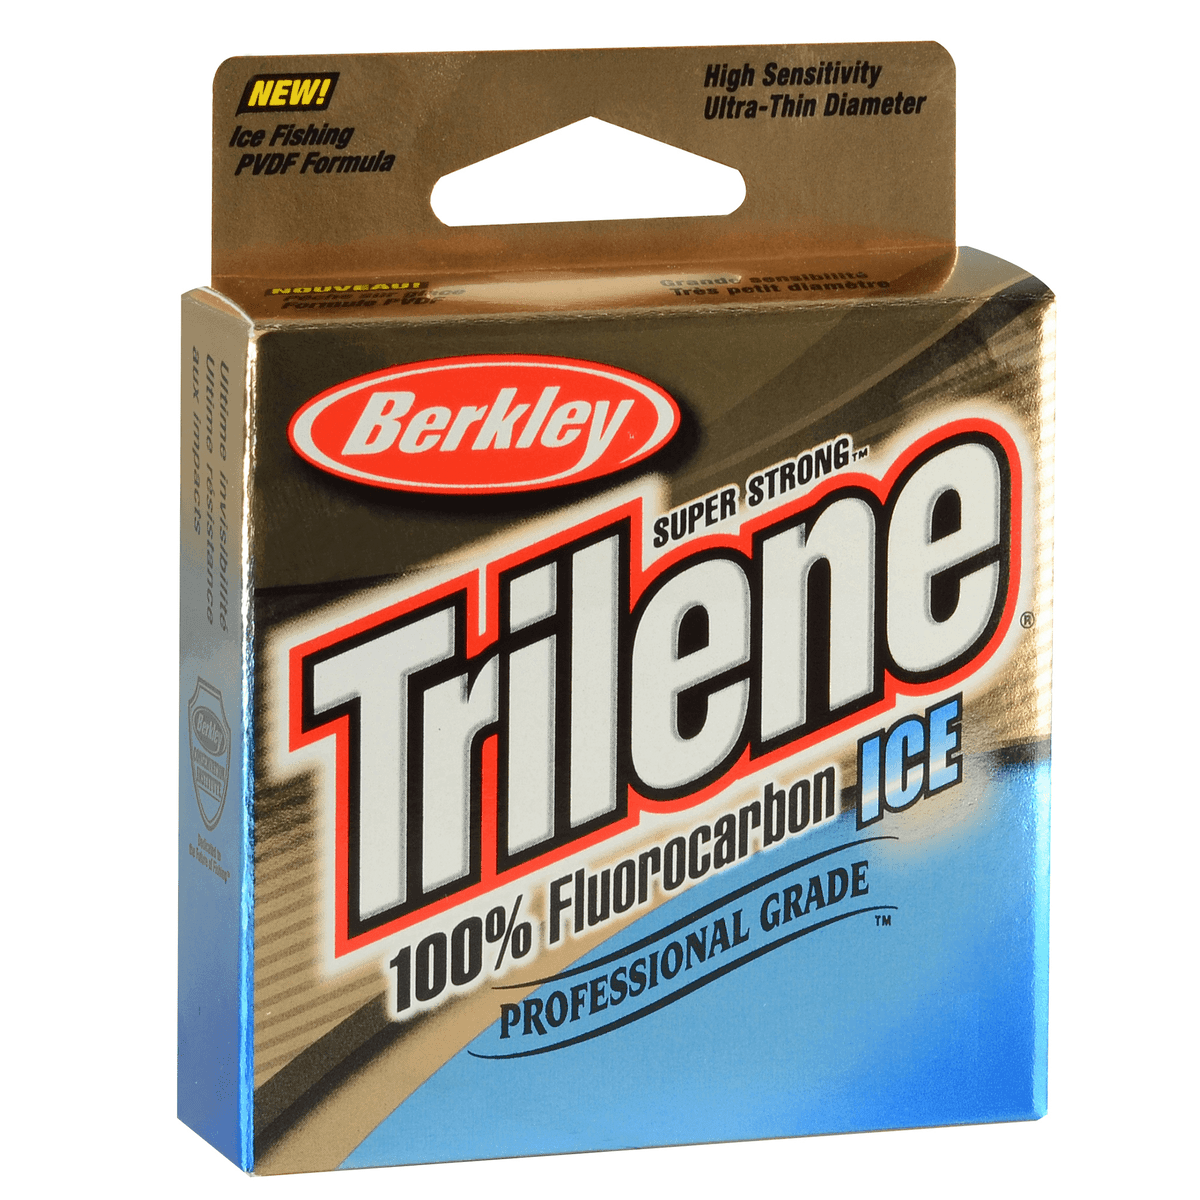 Berkley Trilene Ice 100% Fluorocarbon Clear Line – Weaver's Tackle